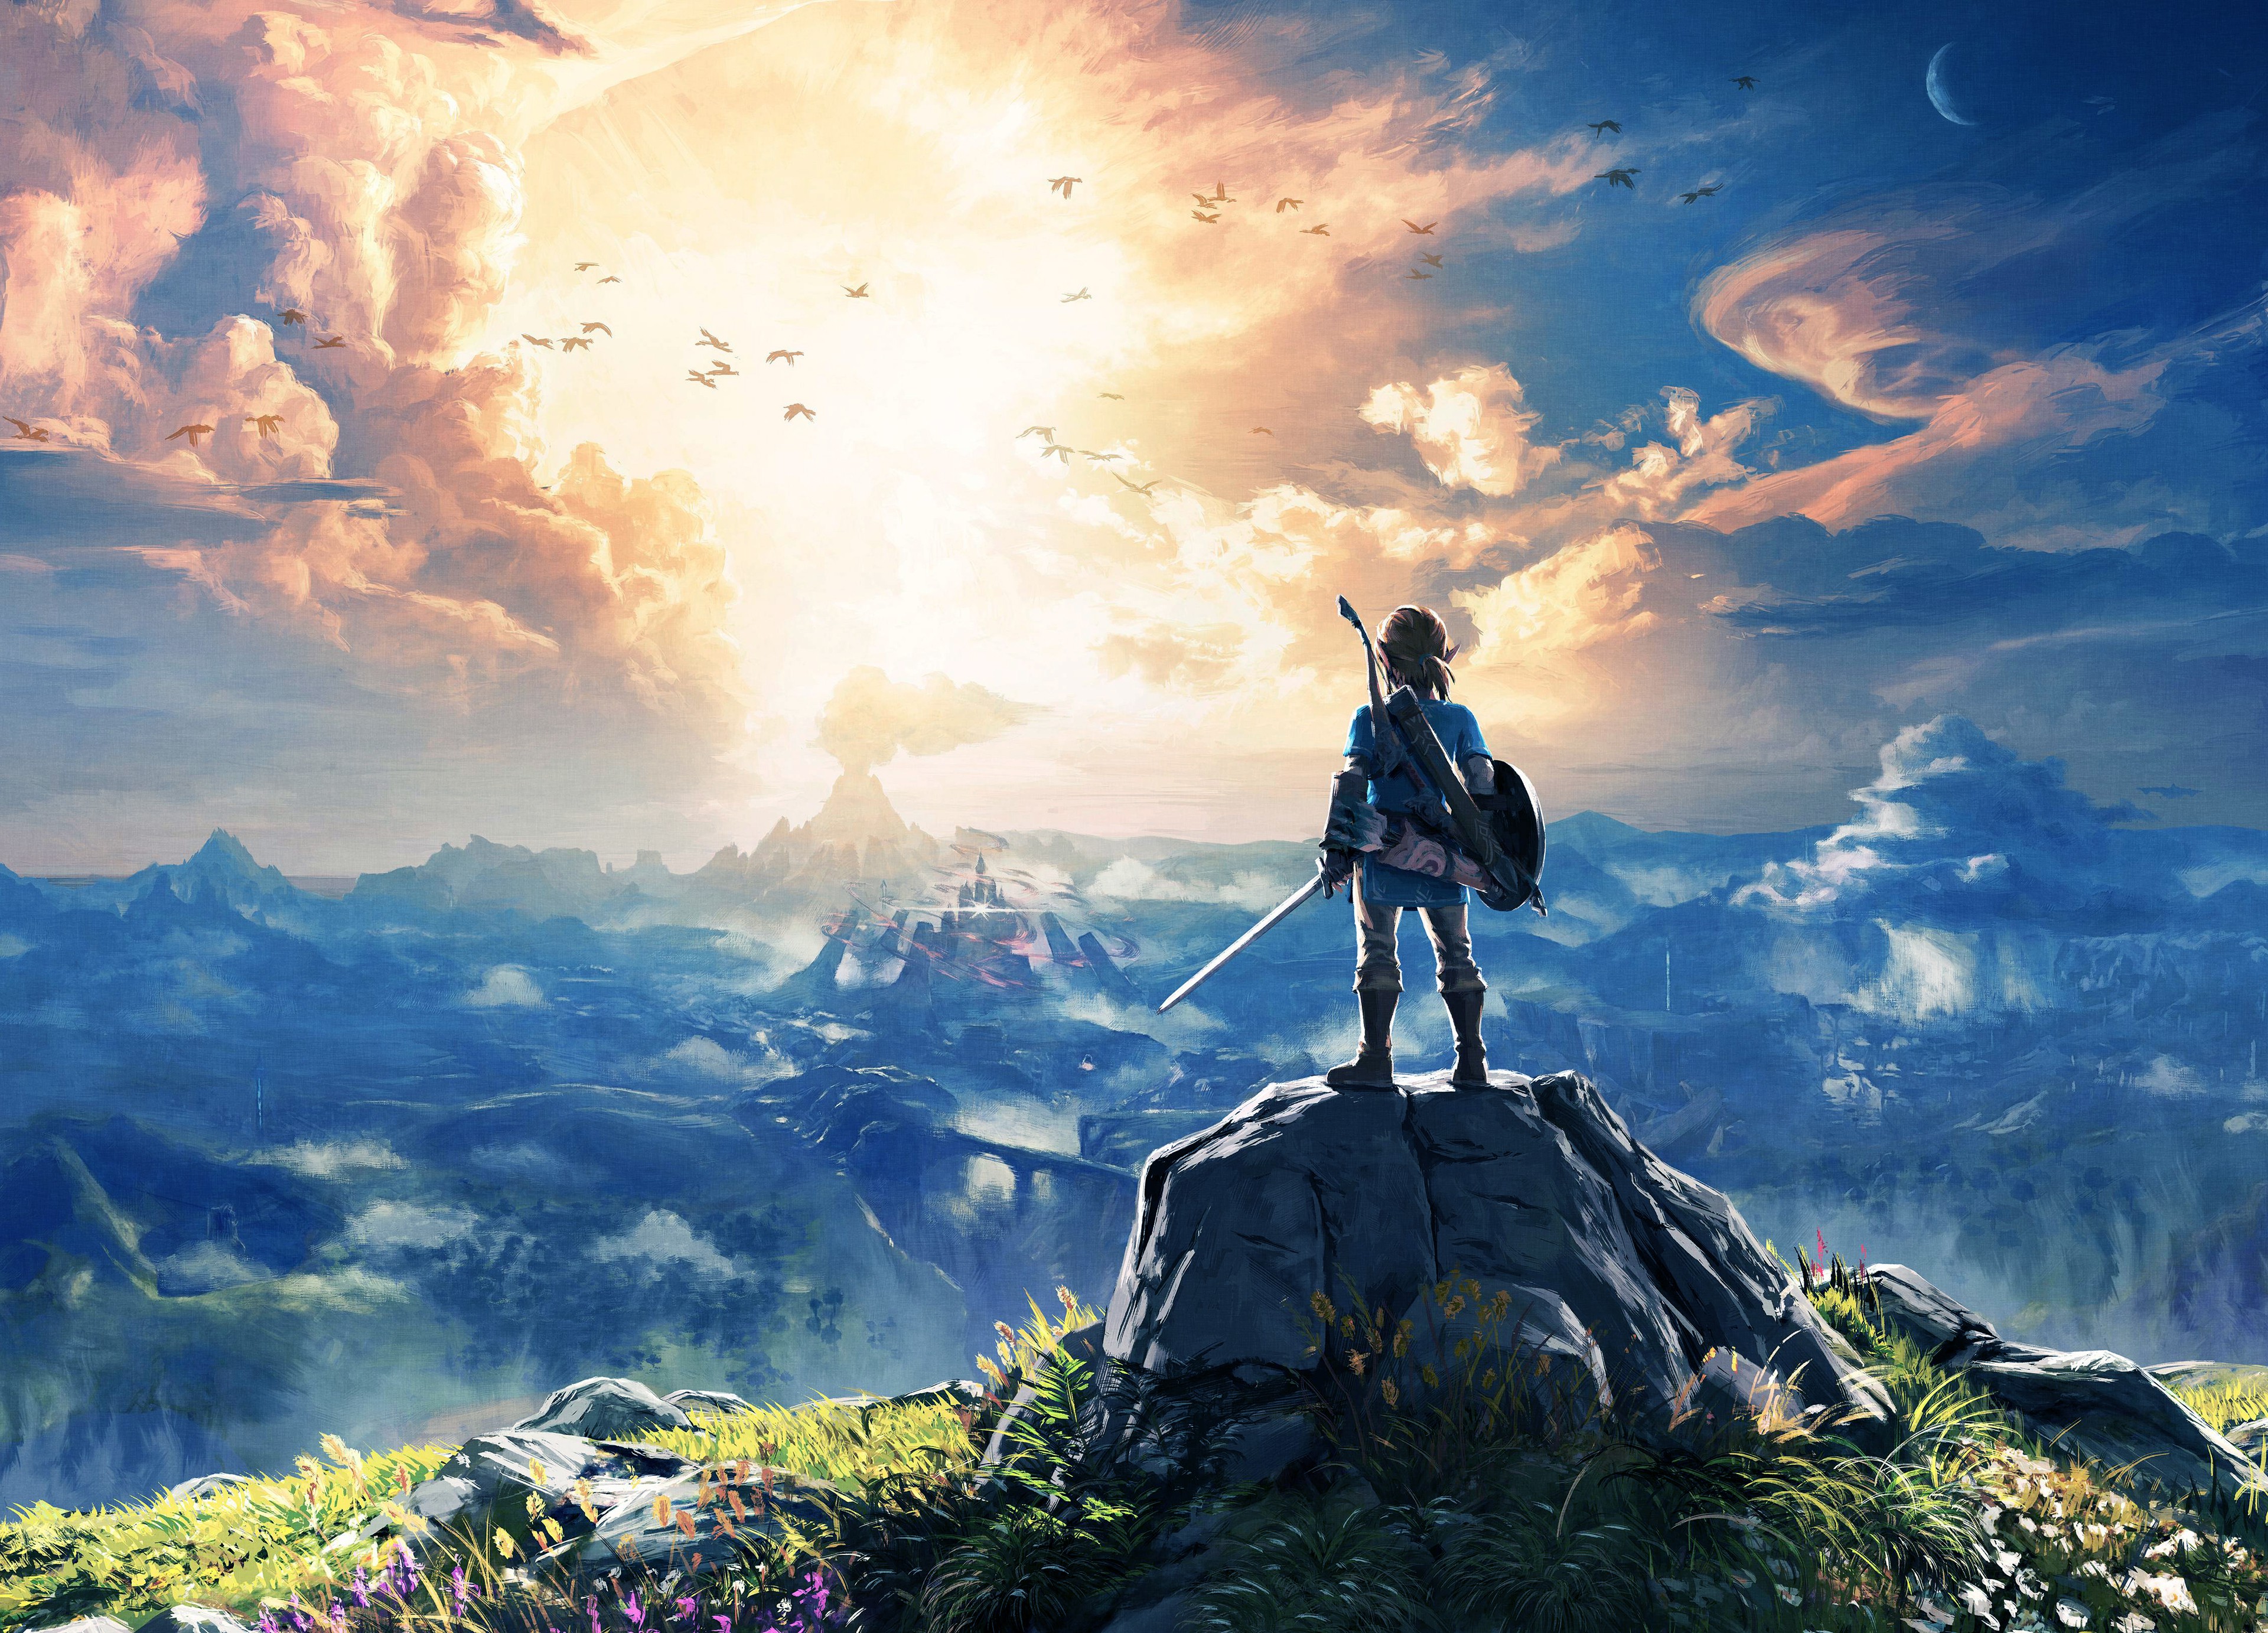 54+] The Legend Of Zelda: Breath Of The Wild HD Wallpapers ... -  WallpaperSafari